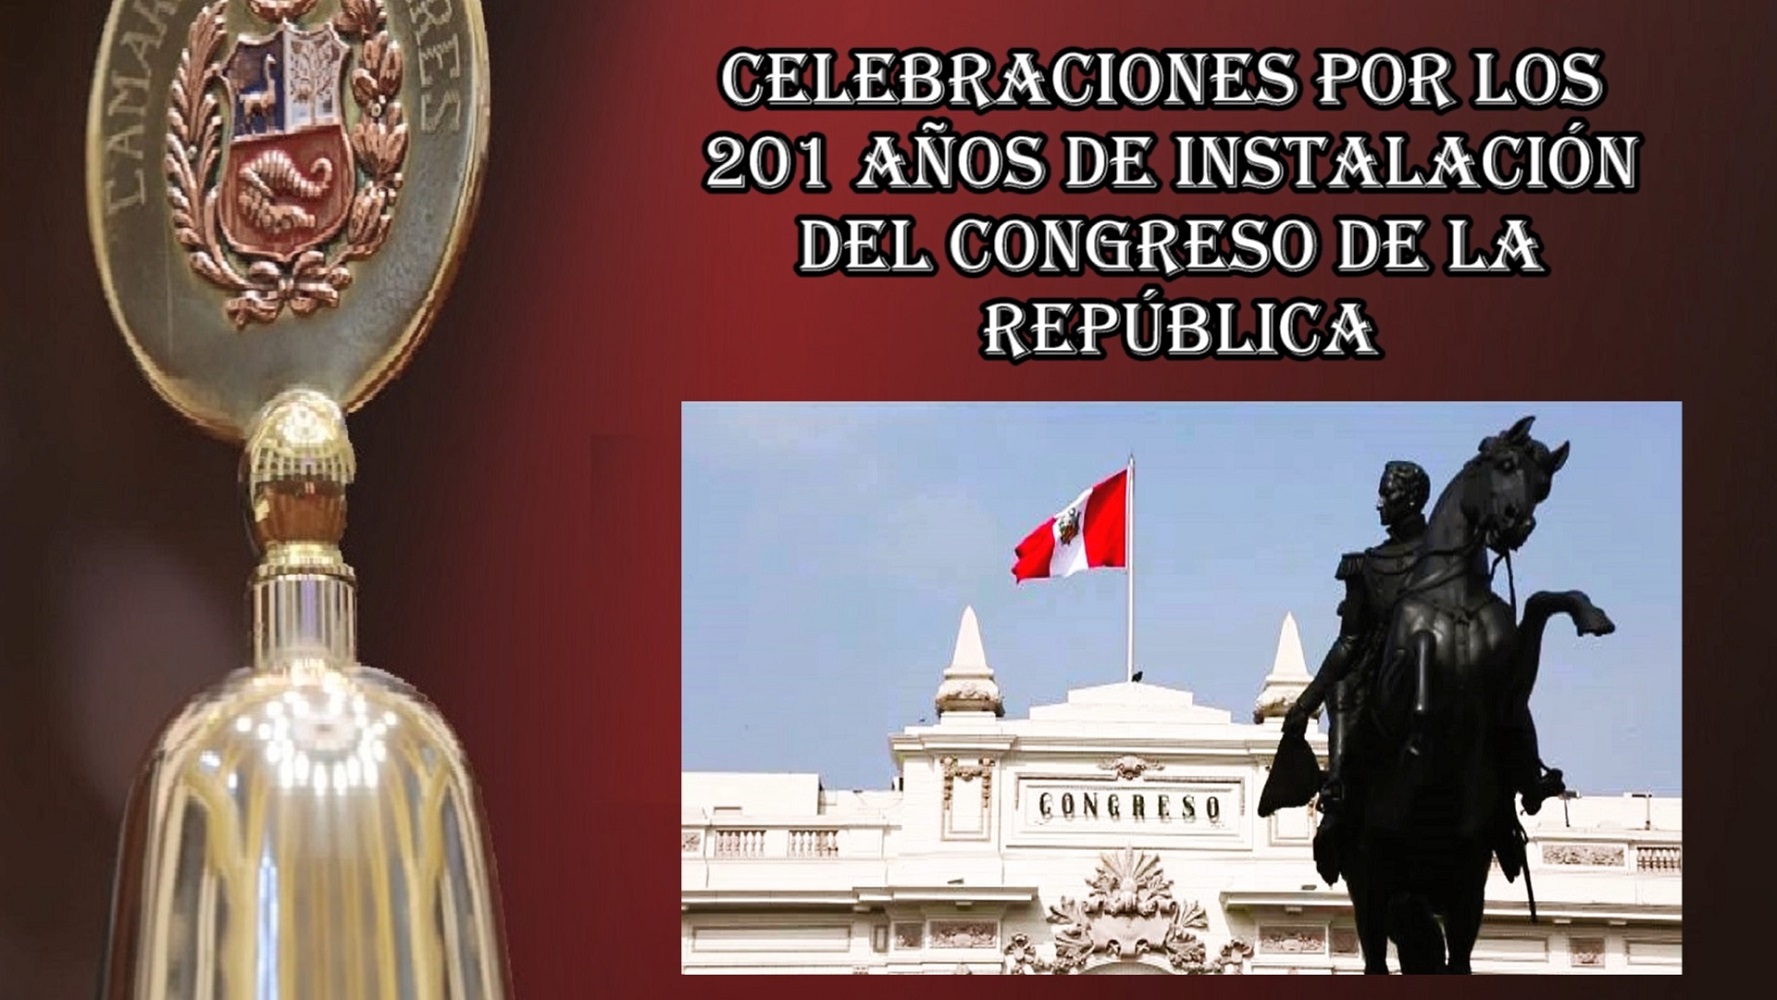 Con diversas actividades en la semana y sesión solemne el miércoles 20 por los 201 años de instalación del Congreso de la República.